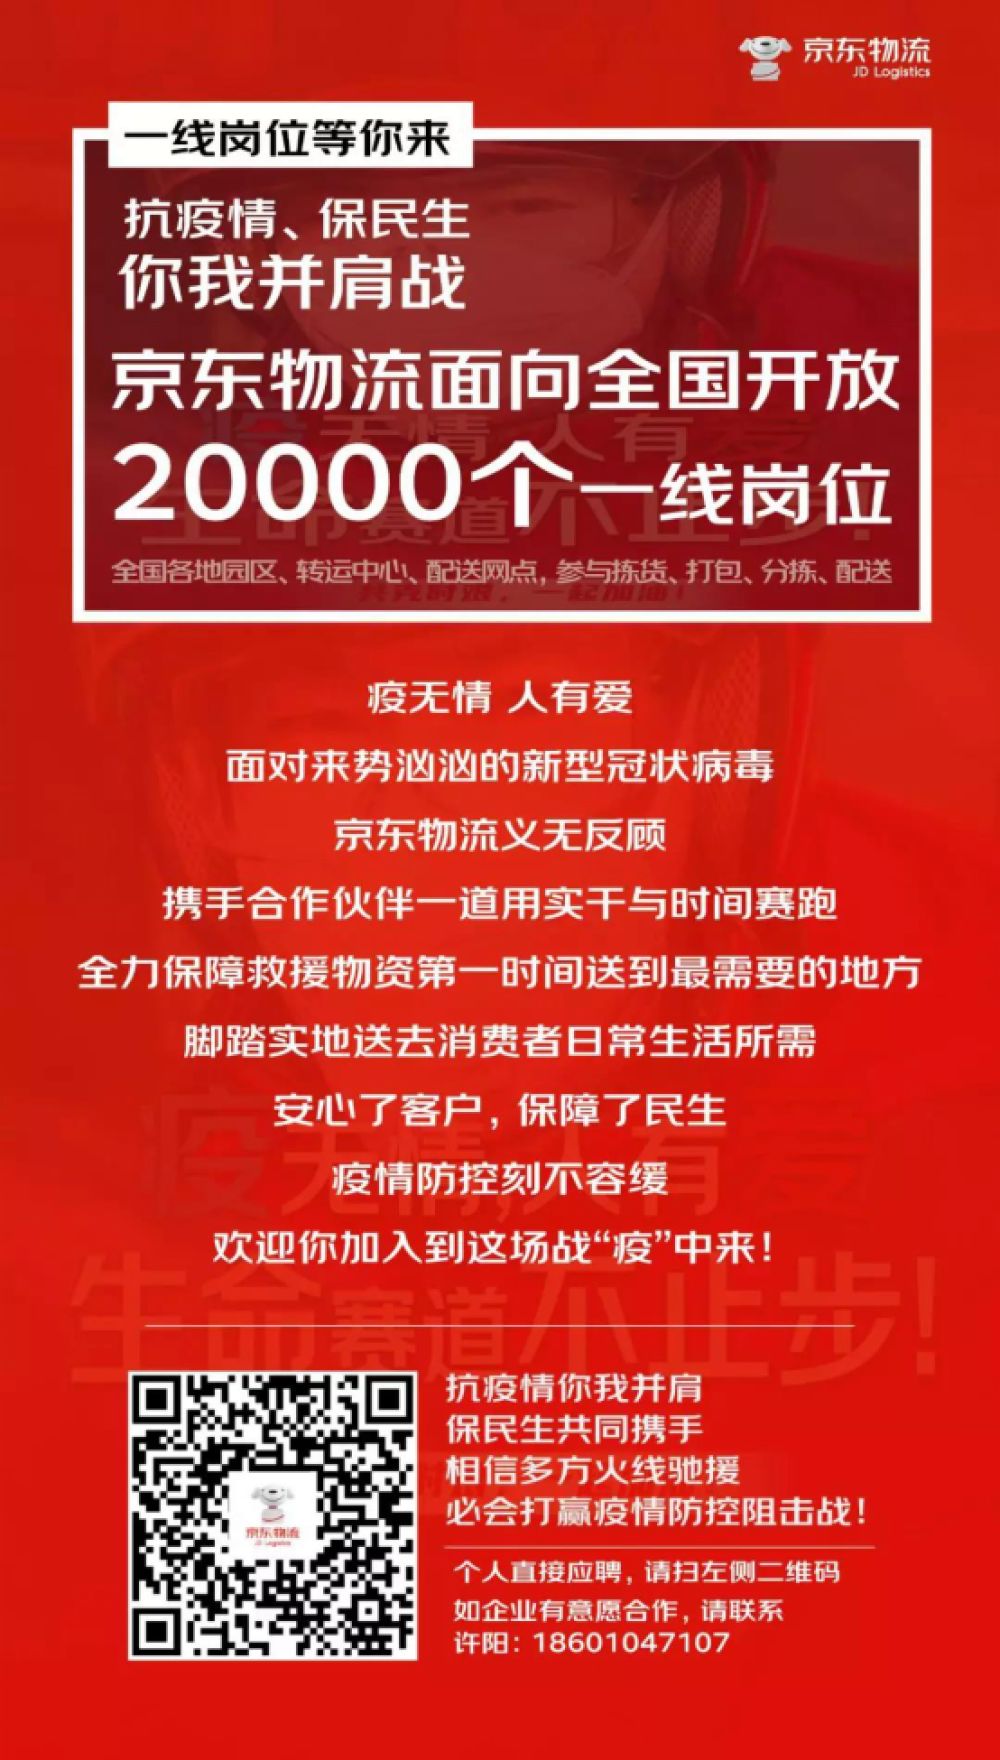 抗疫情 稳就业 京东集团、达达集团将联合招募超35000个正式及临时员工